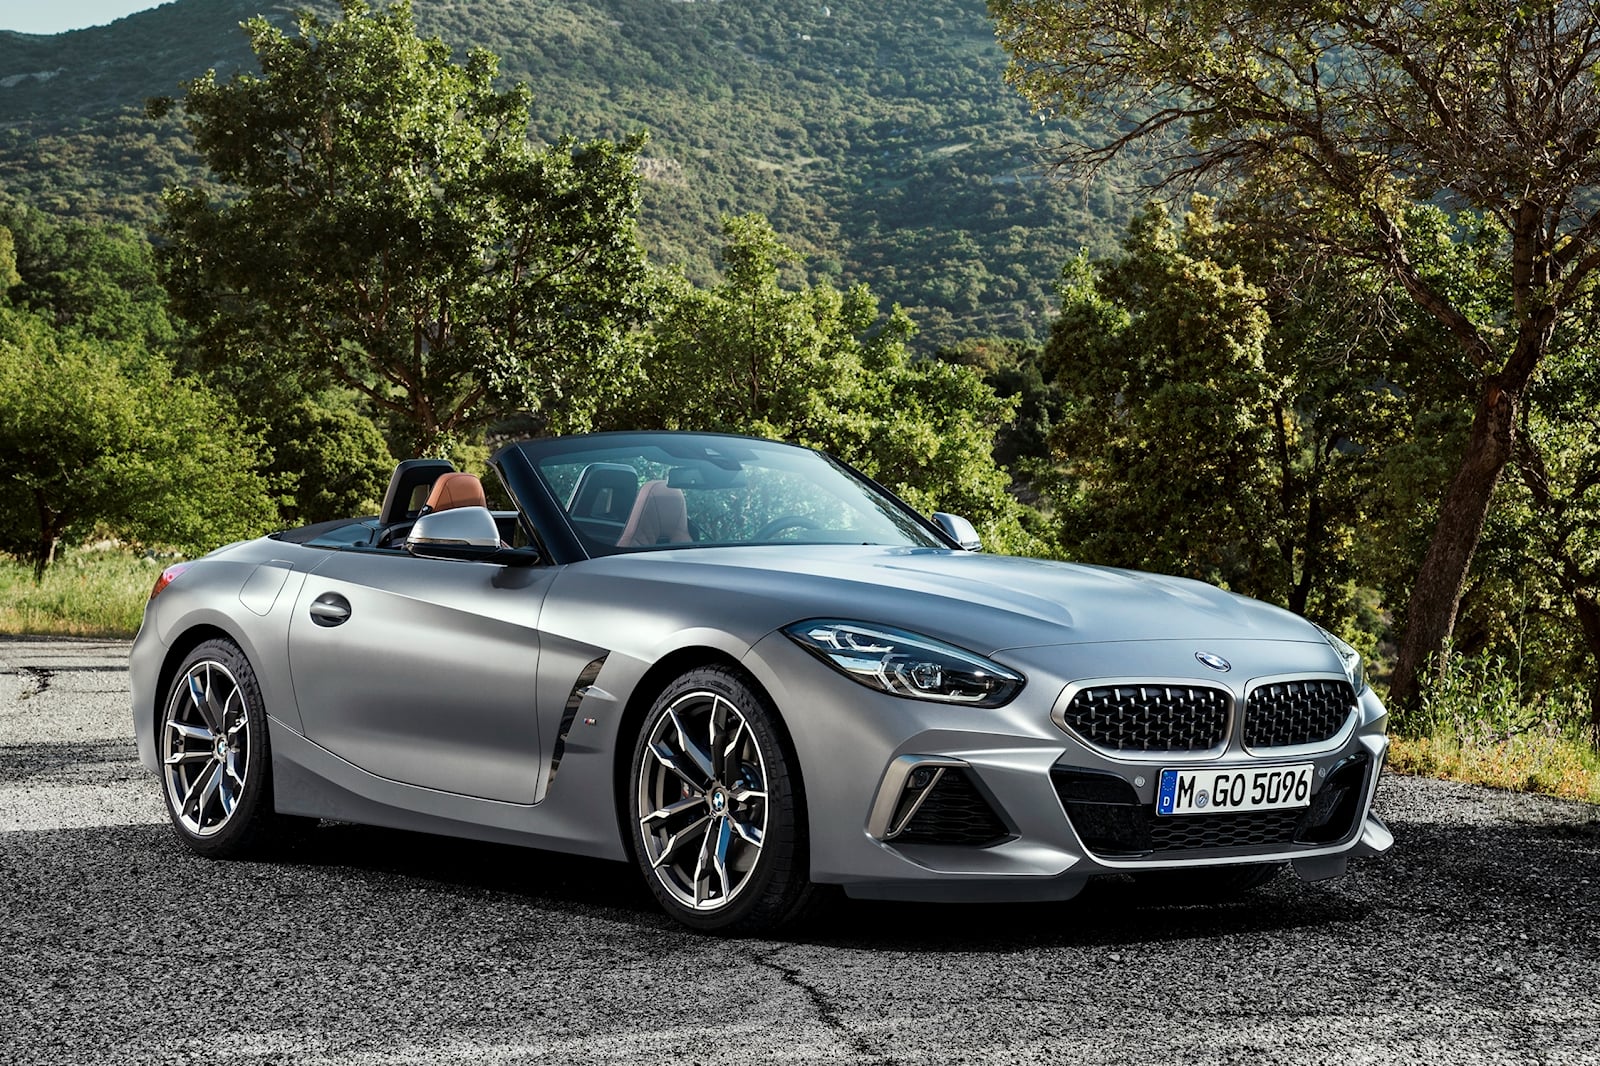 Согласно блогу BMW, это может скоро измениться. В издании утверждается, что Z4 M40i, оснащенный 3,0-литровым рядным шестицилиндровым двигателем, может получить опцию механики на некоторых рынках. По слухам, этот вариант находится в стадии «активного 